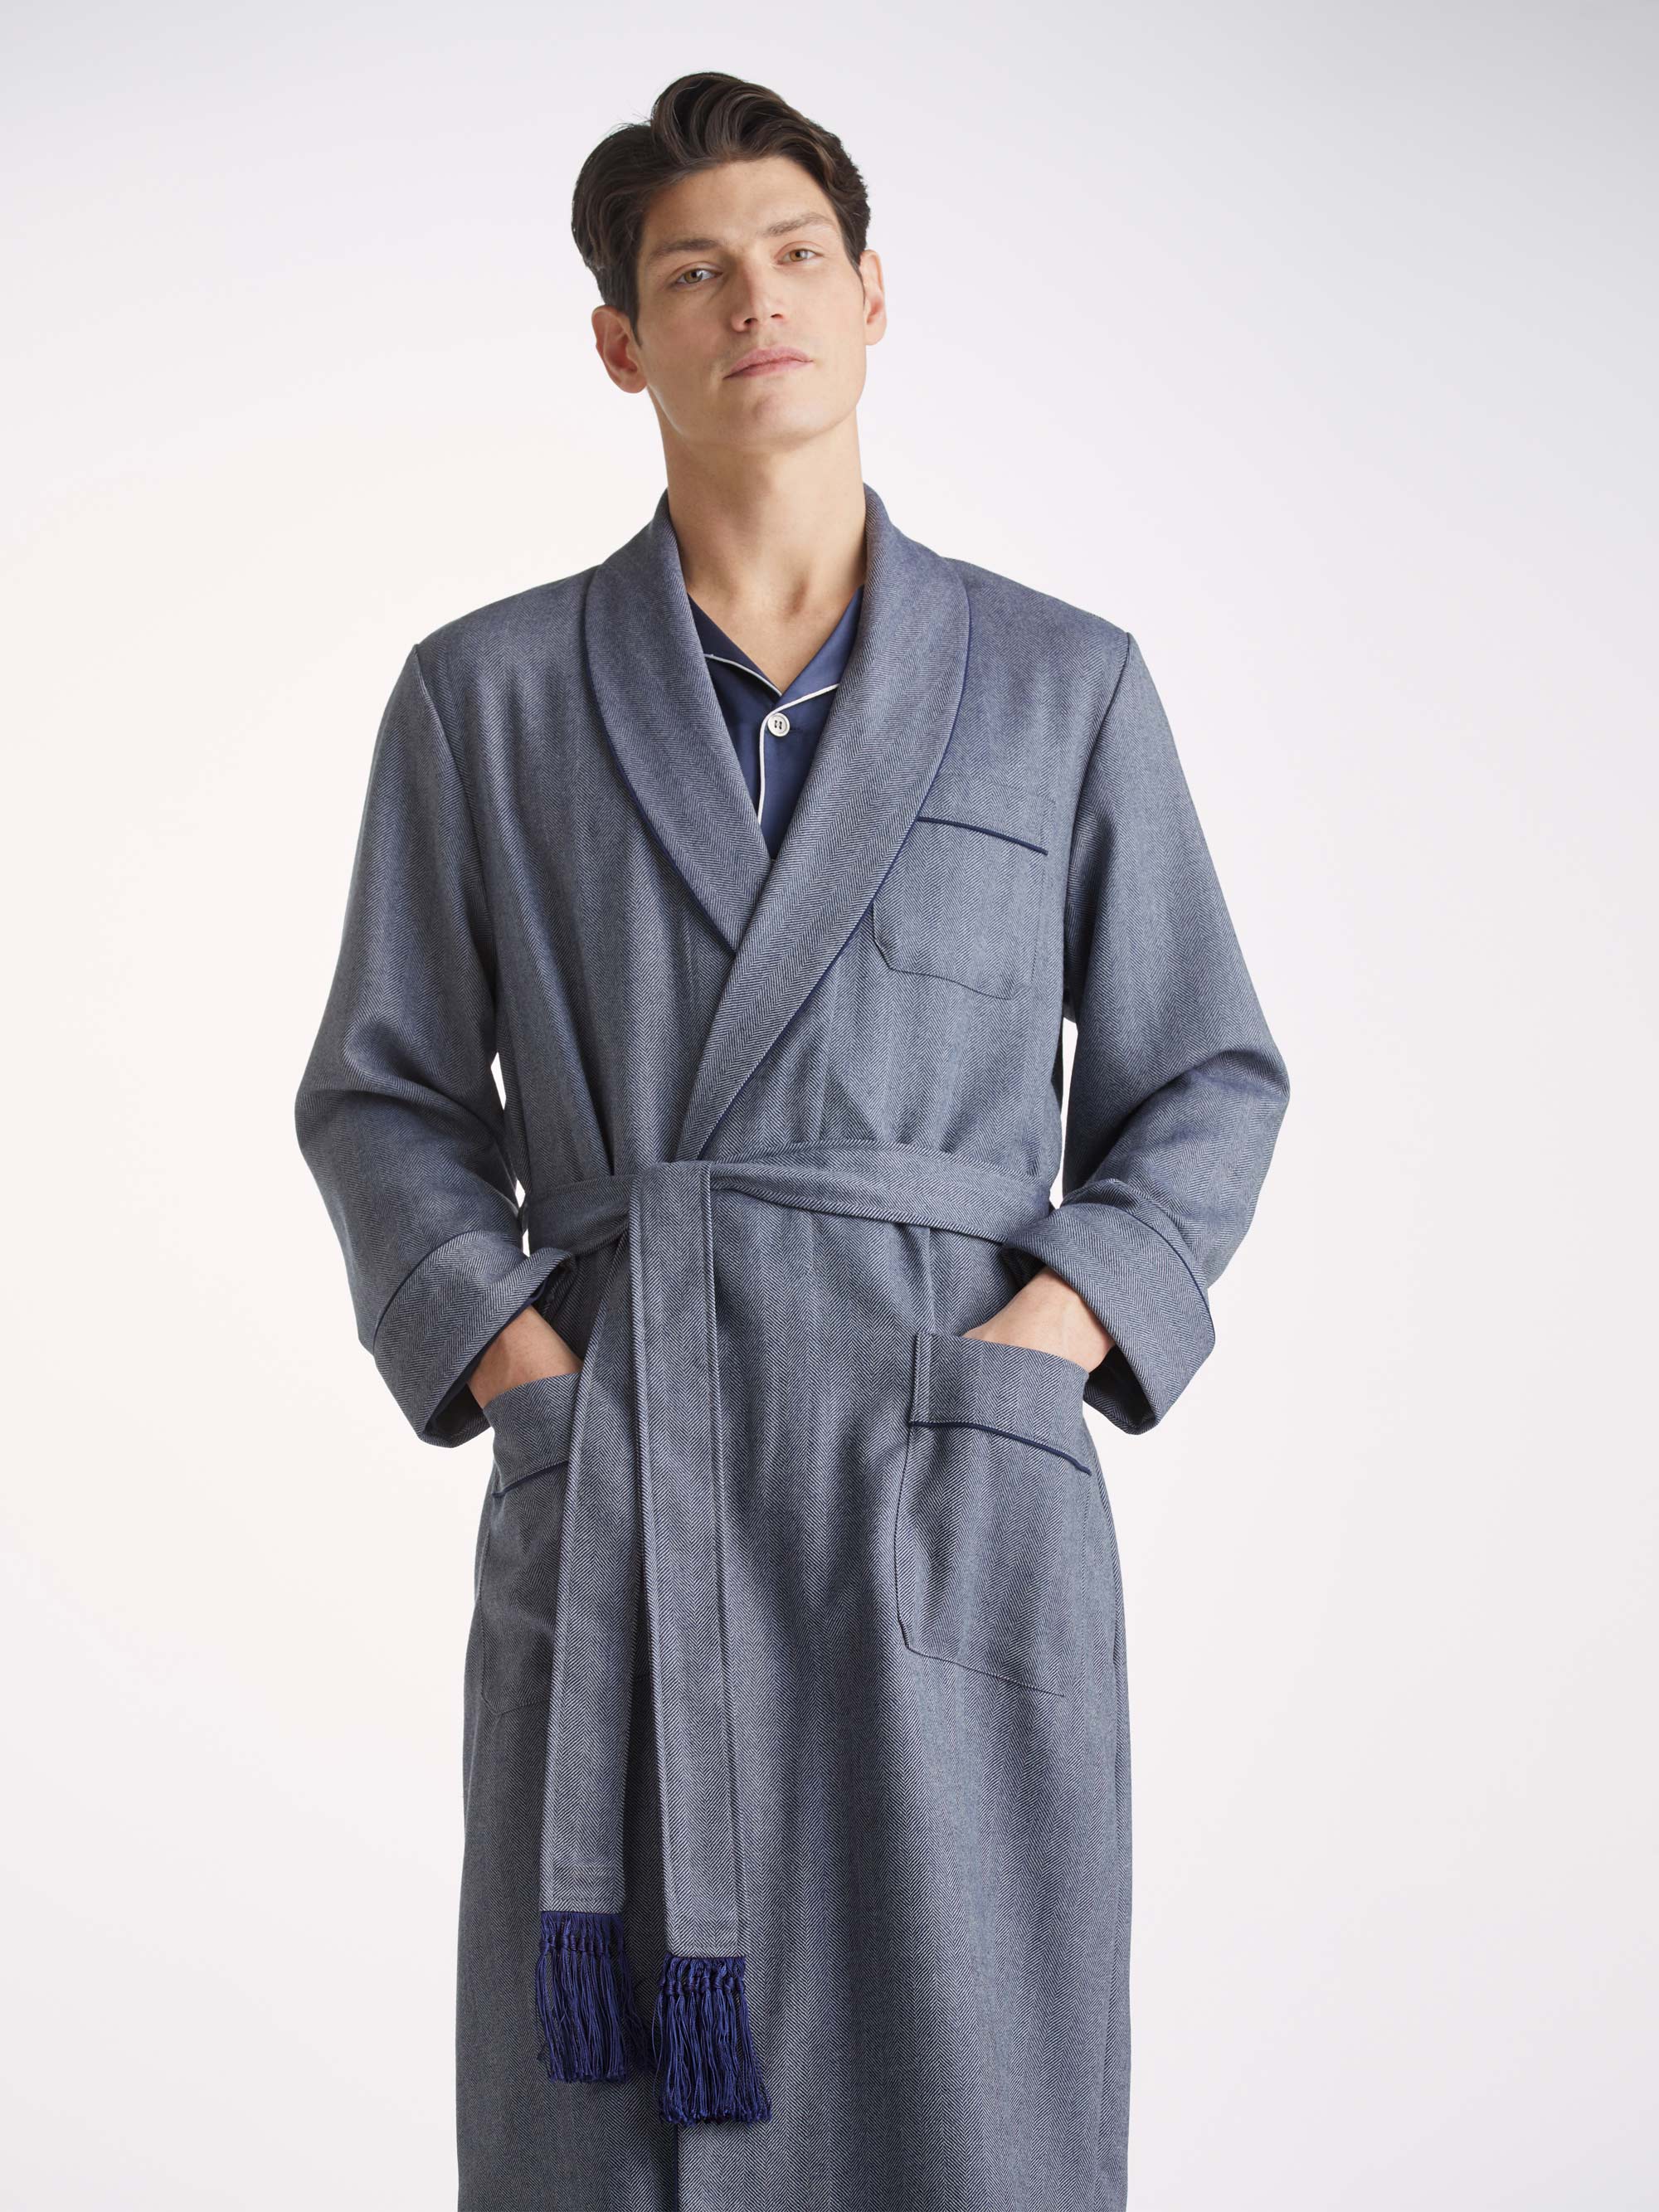 Ladies Plus Size Fleece Dressing Gown Full Length Fluffy Bathrobe Housecoat  Robe | eBay